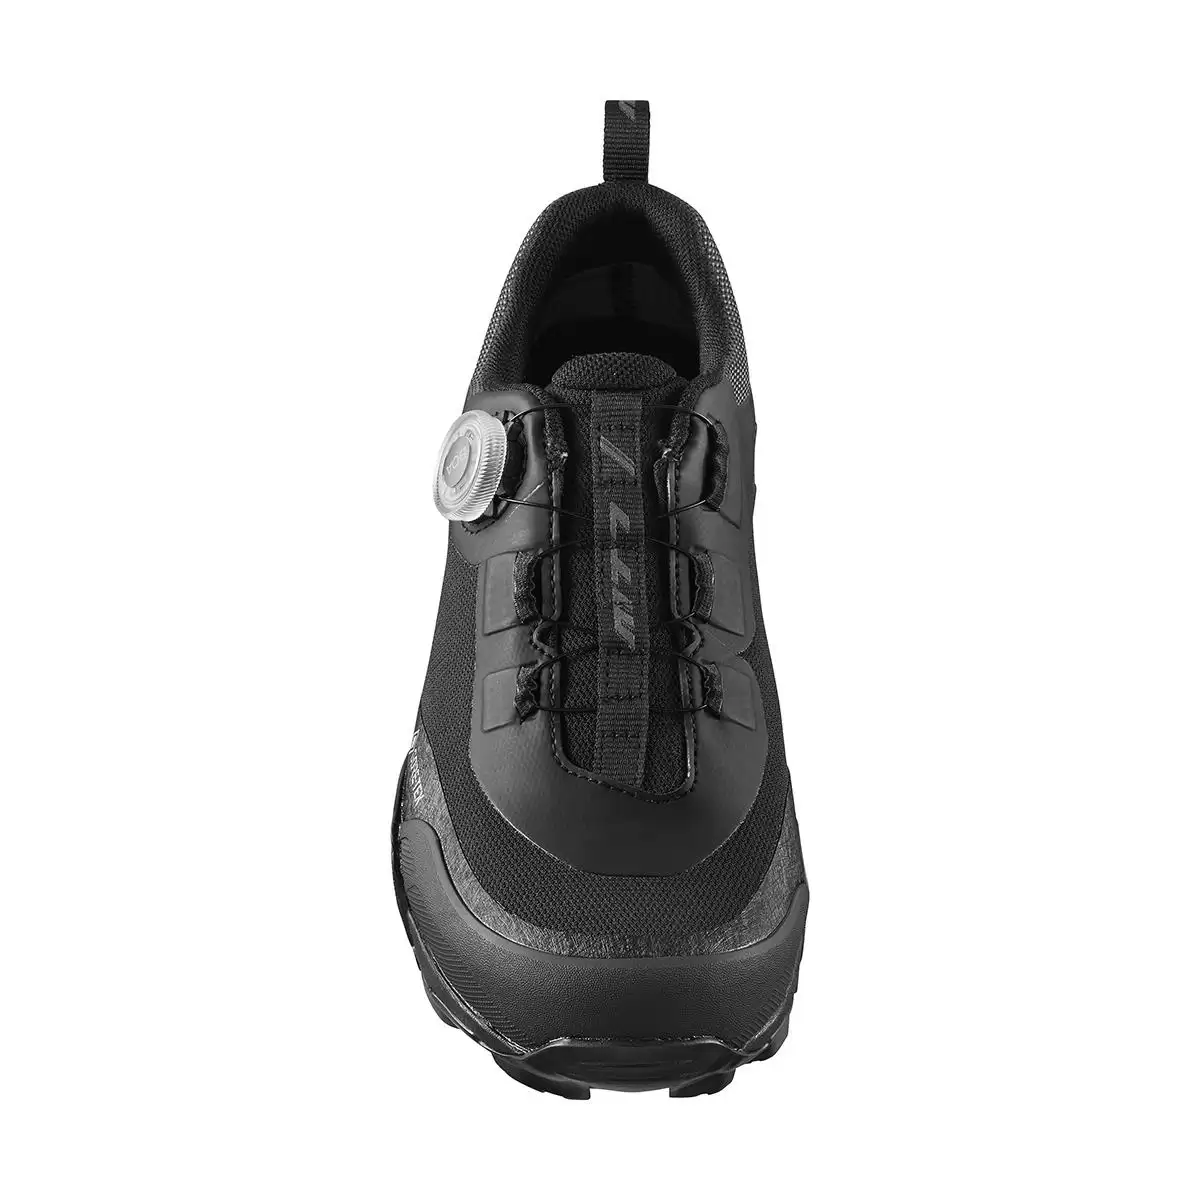 MTB Shoes SH-MT701GTX MT701 Black Size 43 #1